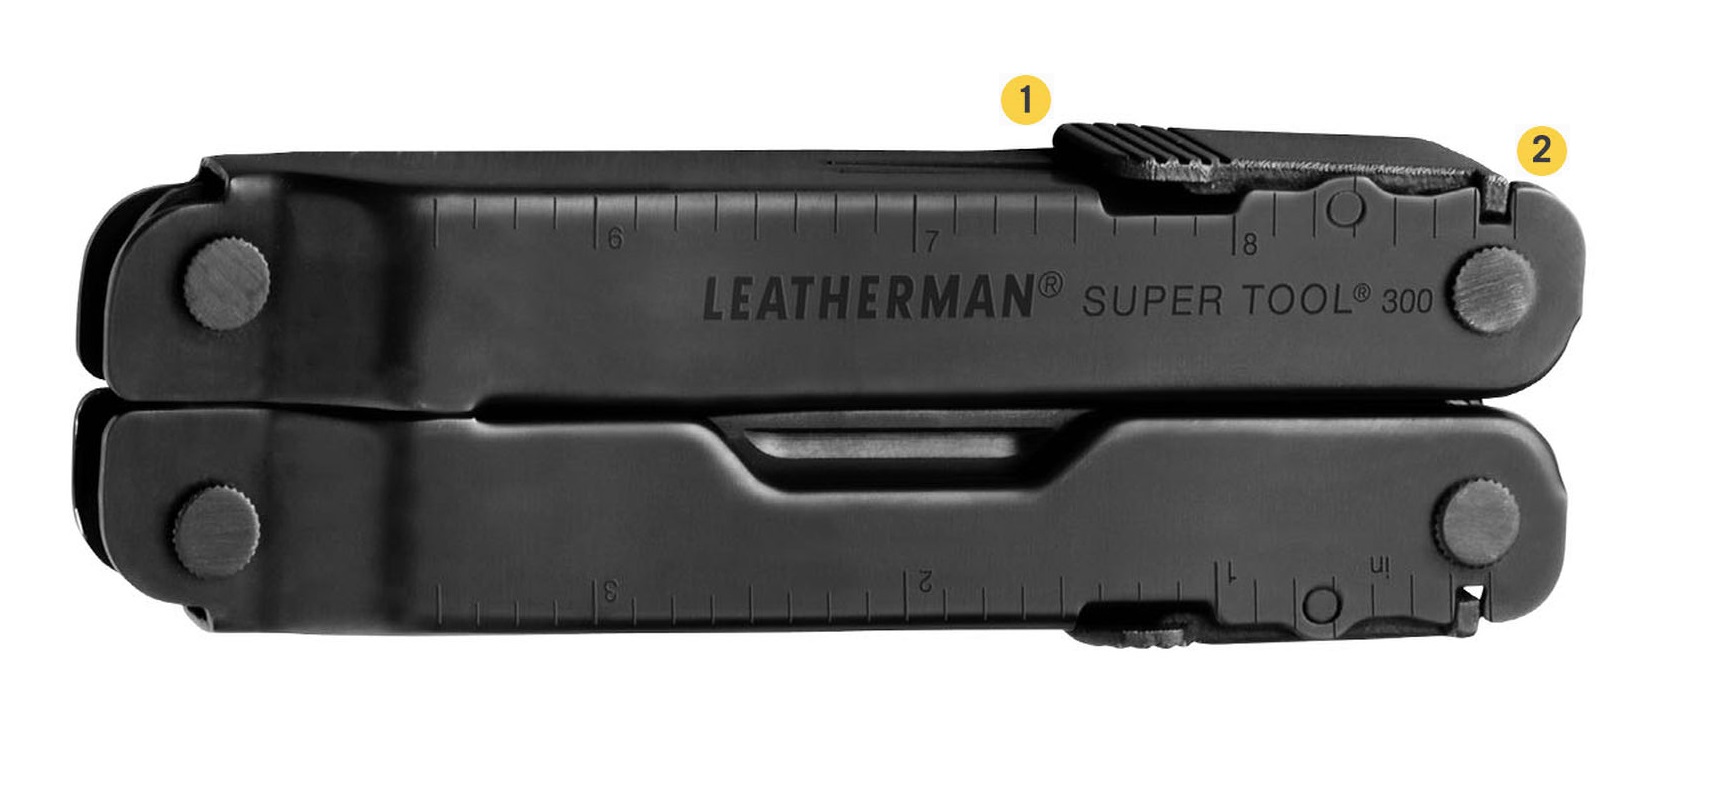 Многофункциональный инструмент Leatherman Super Tool 300 с надежной фиксацией и блокировкой 